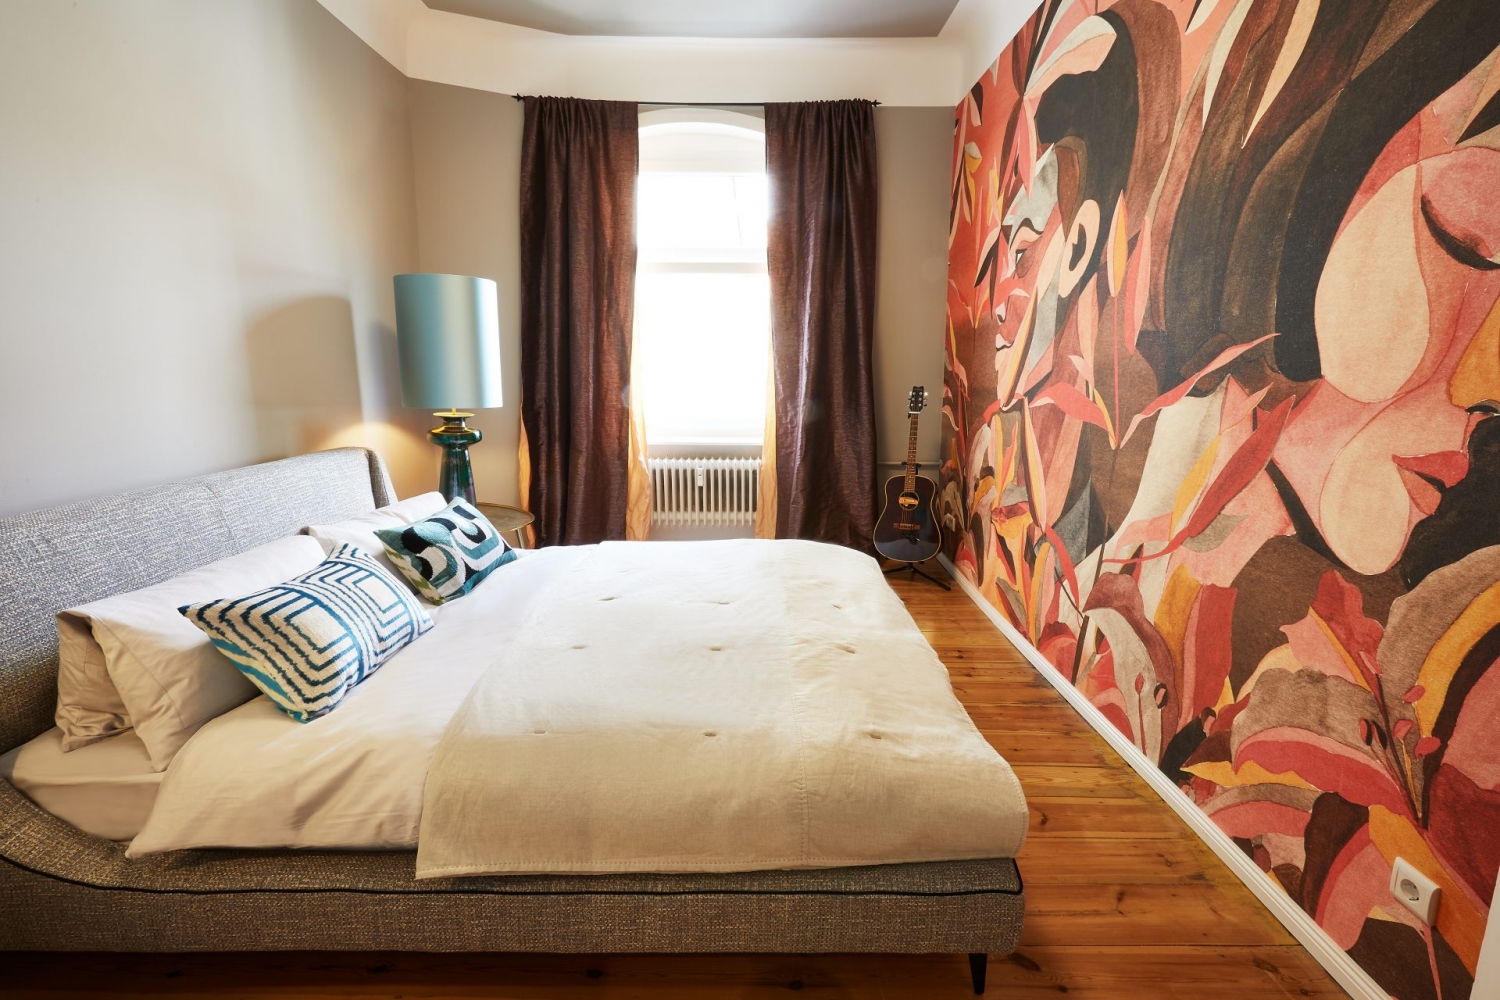 Schlafzimmer mit gepolstertem Valentini Bett, Gitarre, blauer großer Lampe auf goldenem Nachttisch und in Herbstfarben gehaltener Tapete mit Männer- und Frauengesicht